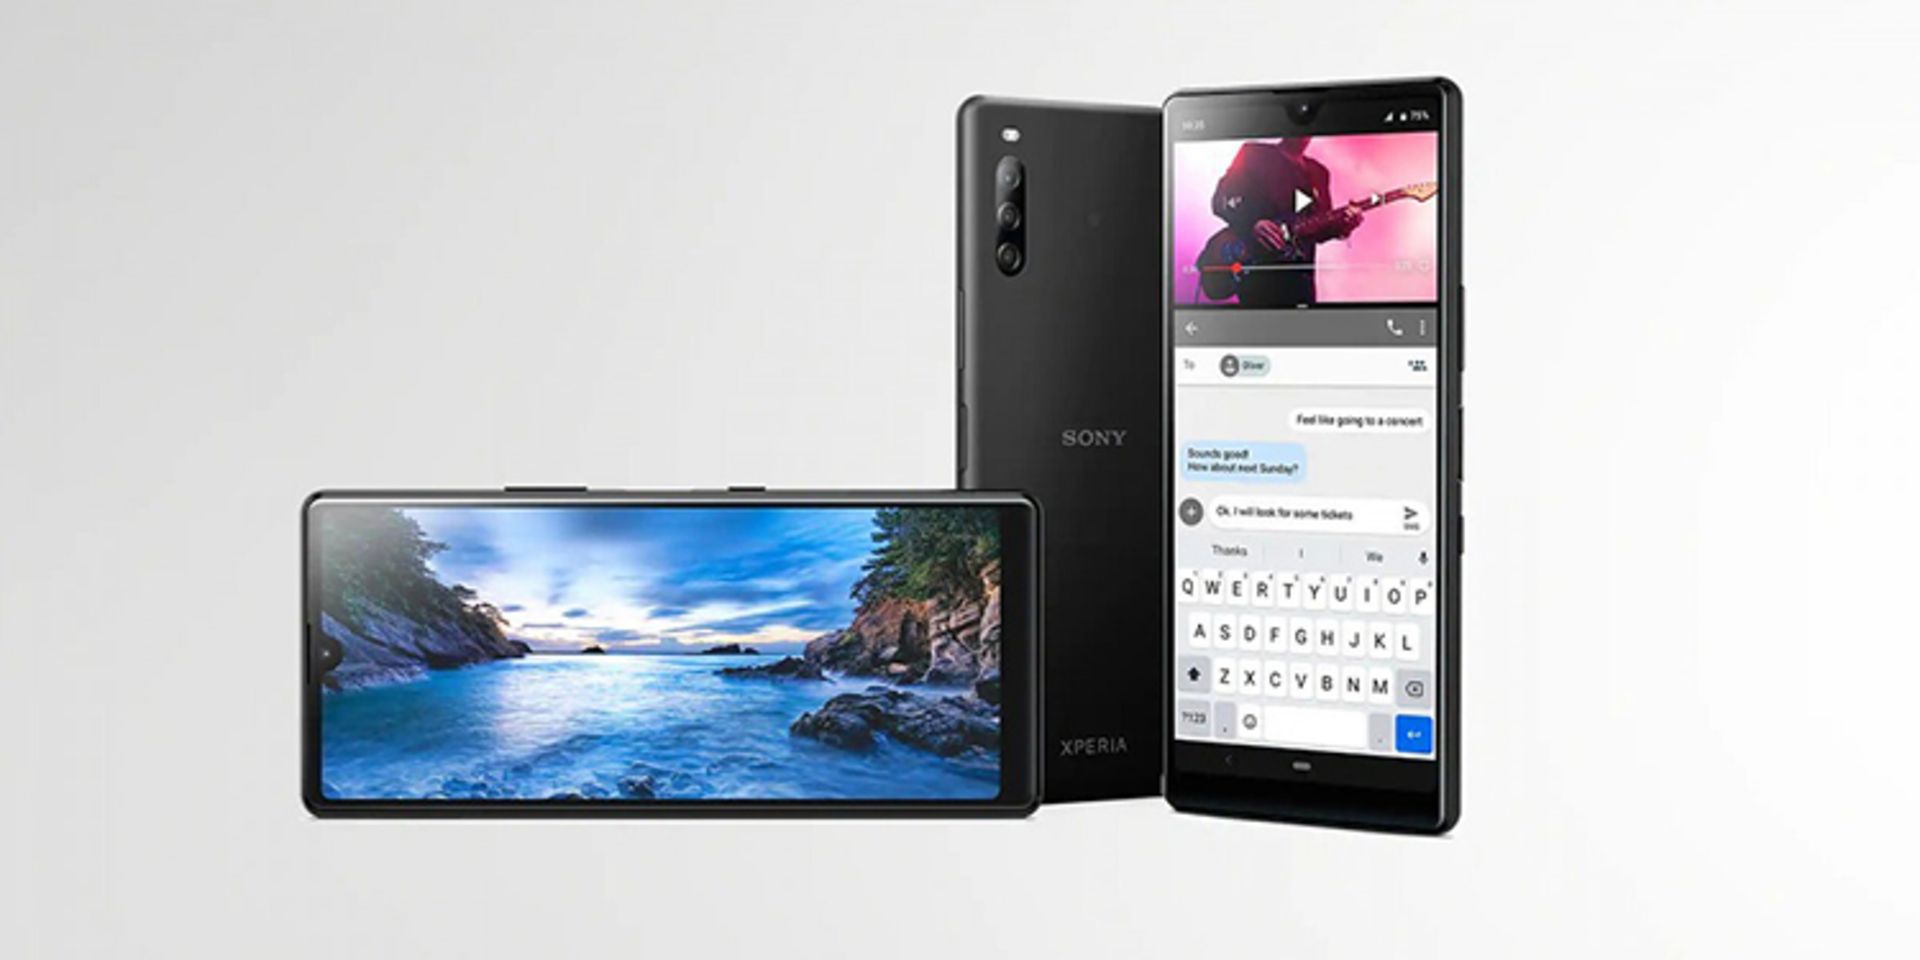 اکسپریا ال 4 سونی / Sony Xperia L4